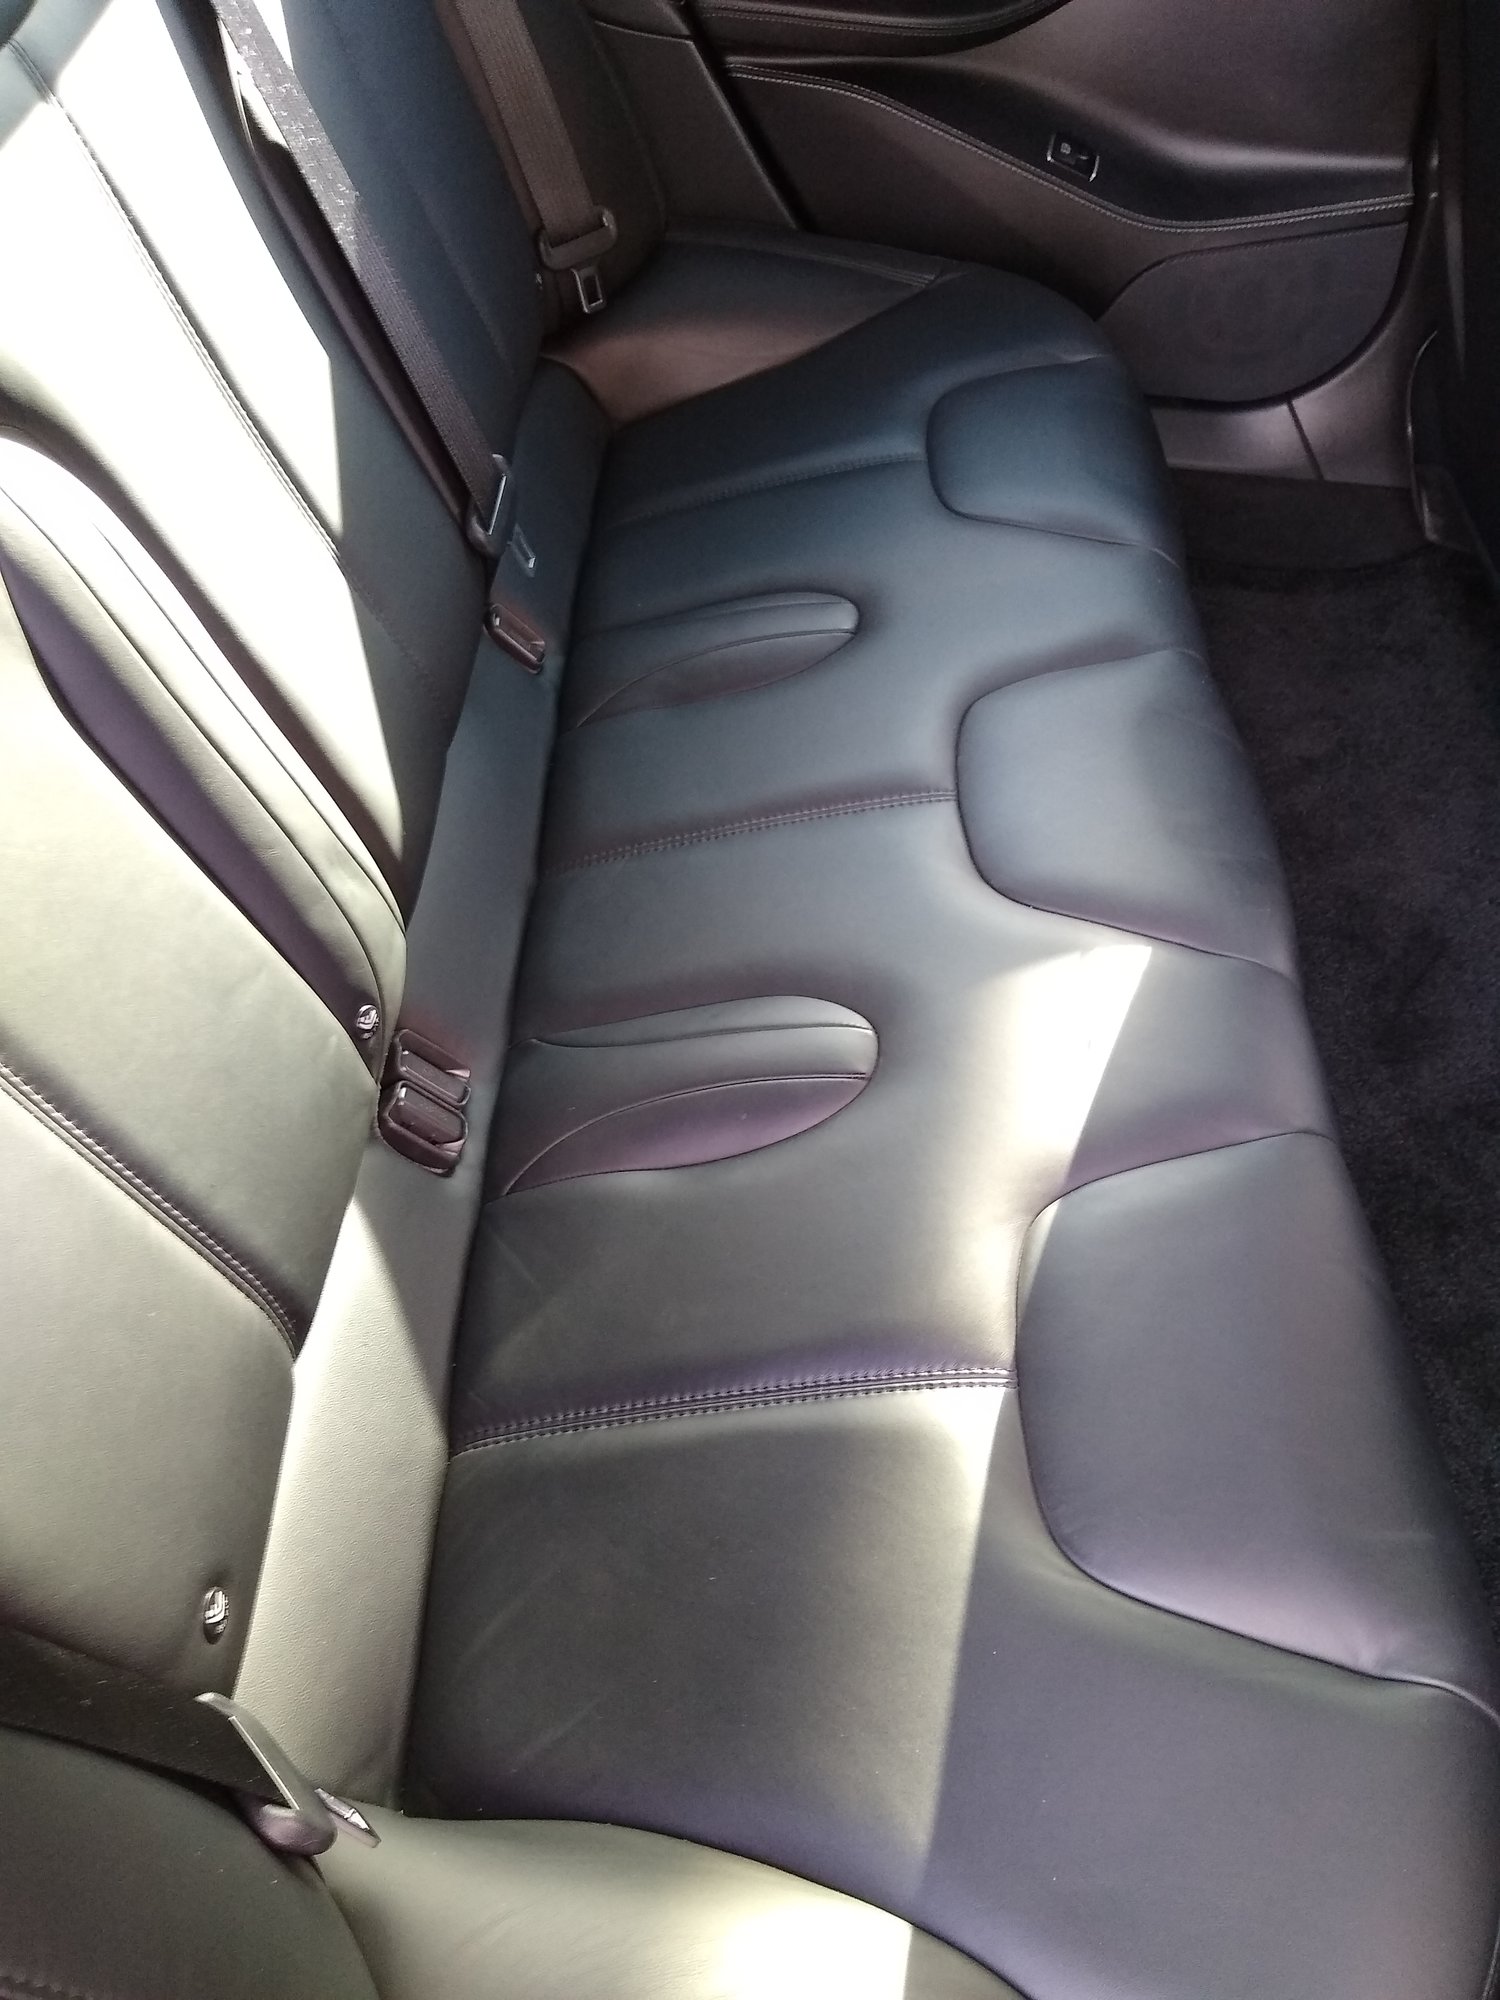 interior_rear_seats.jpg